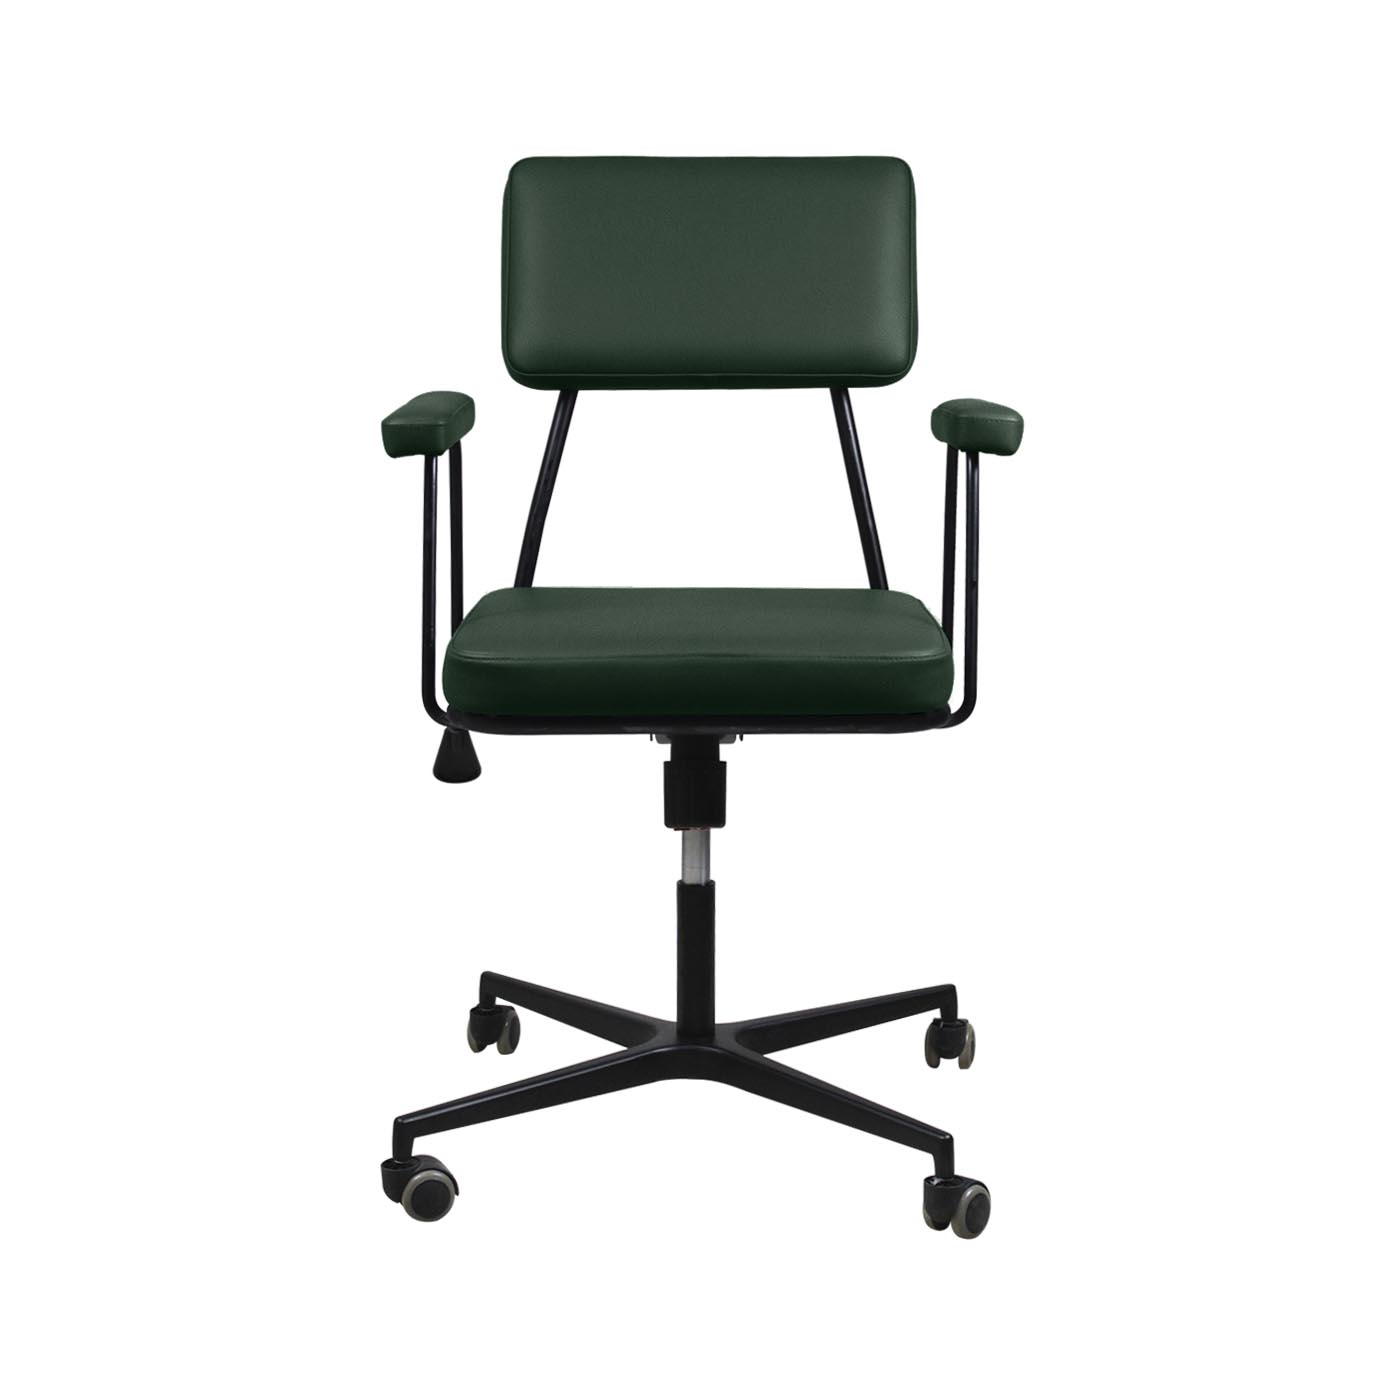 Noblitt Green Work Chair